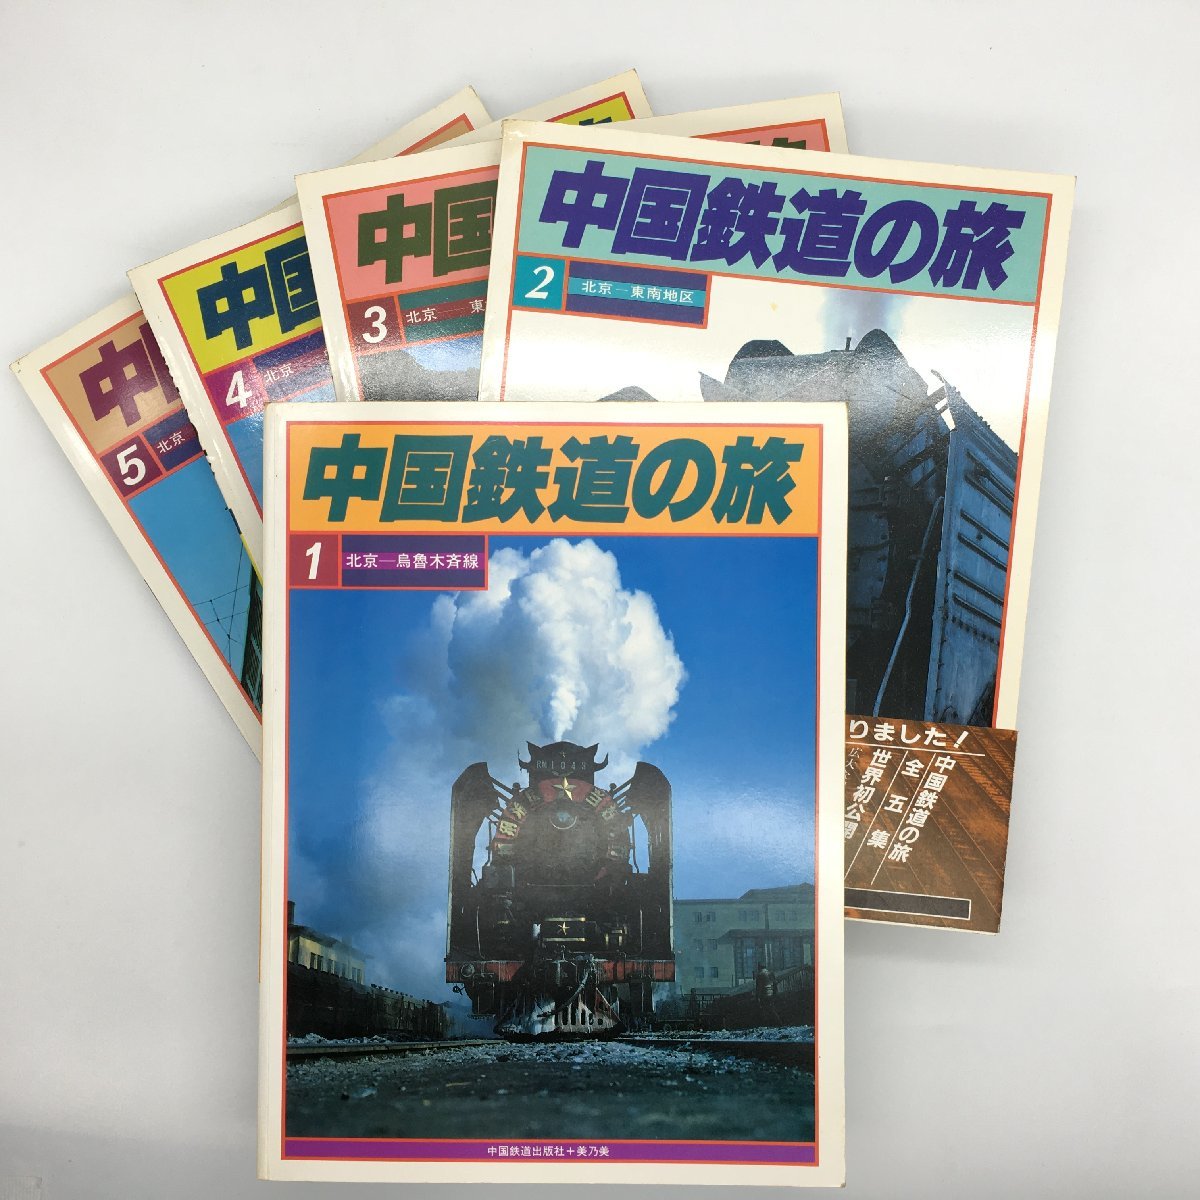 中国鉄道の旅 全5冊 中国鉄道出版社美+乃美 1981年発行 marz.jp